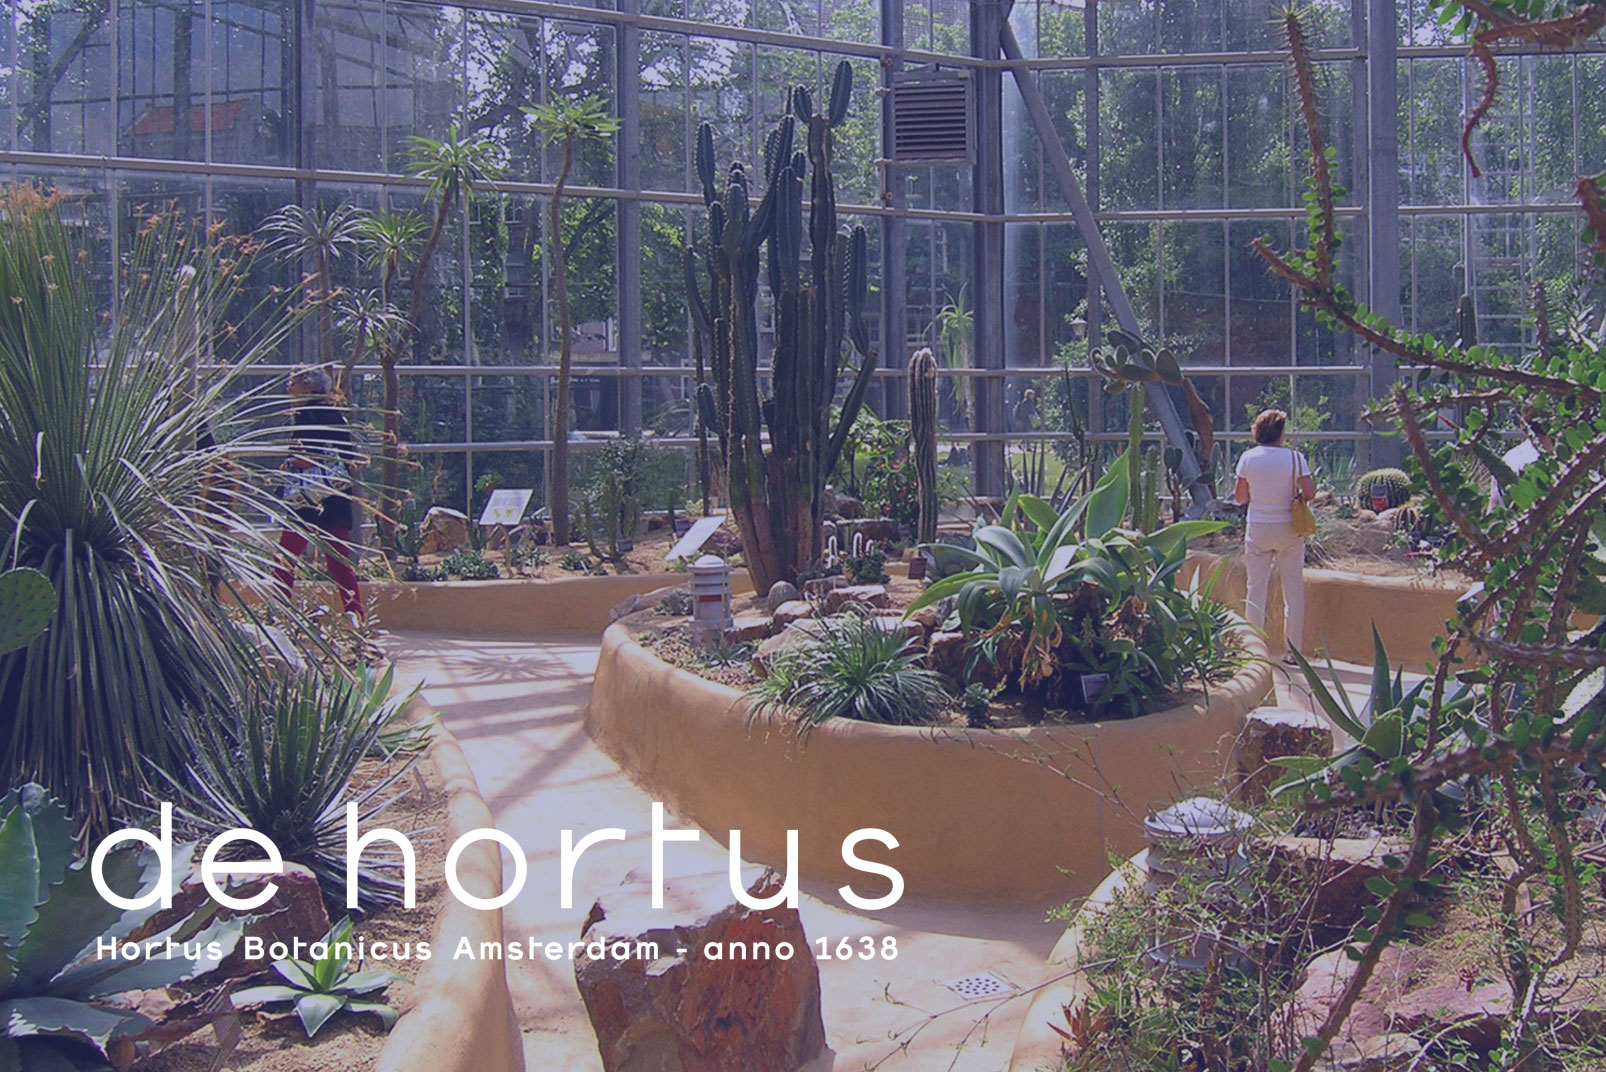 de hortus botanicus app